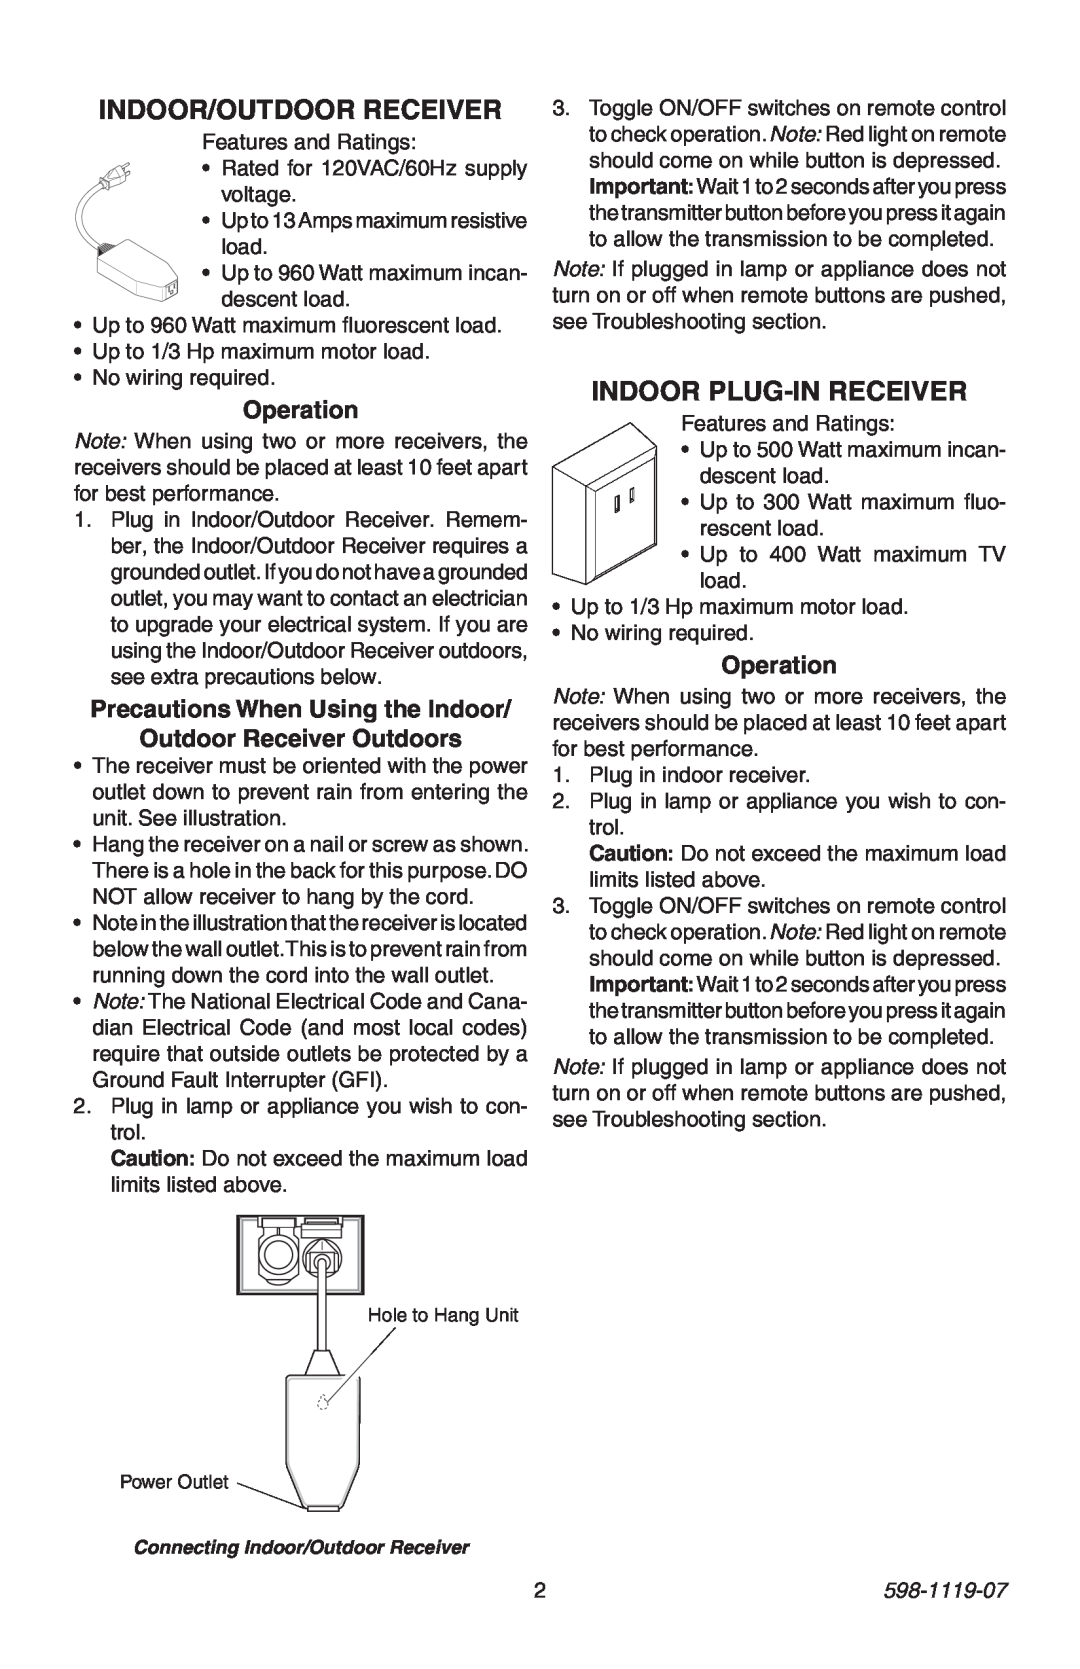 Heath Zenith 598-1119-07 manual Indoor Plug-In Receiver, Operation, Connecting Indoor/Outdoor Receiver 